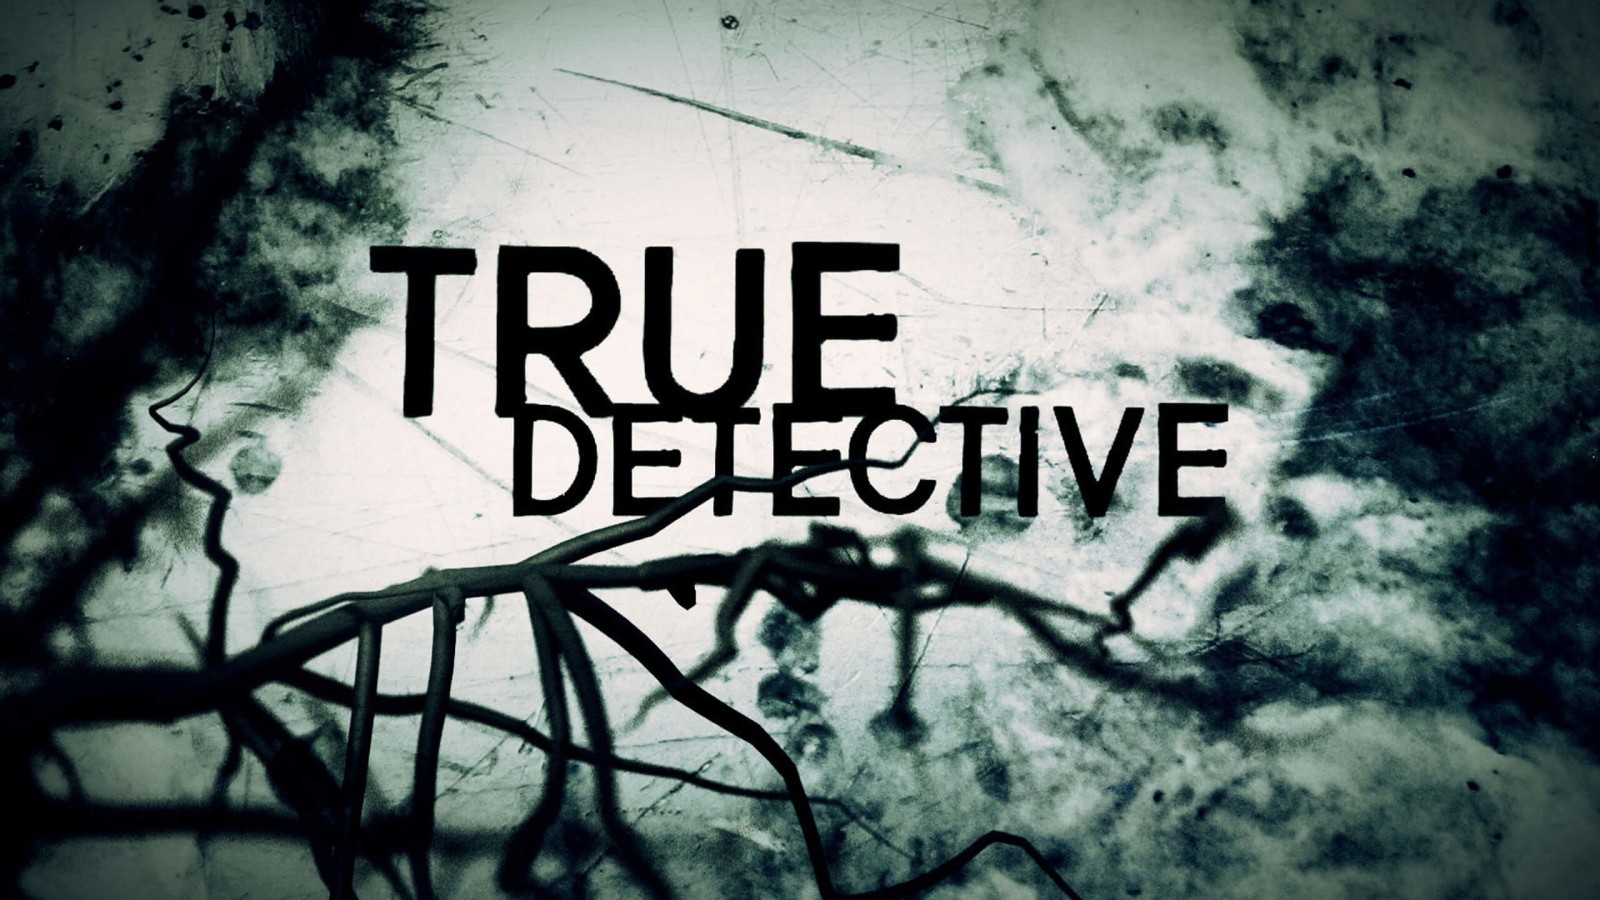 True Detective Wallpaper for Desktop 1600x900